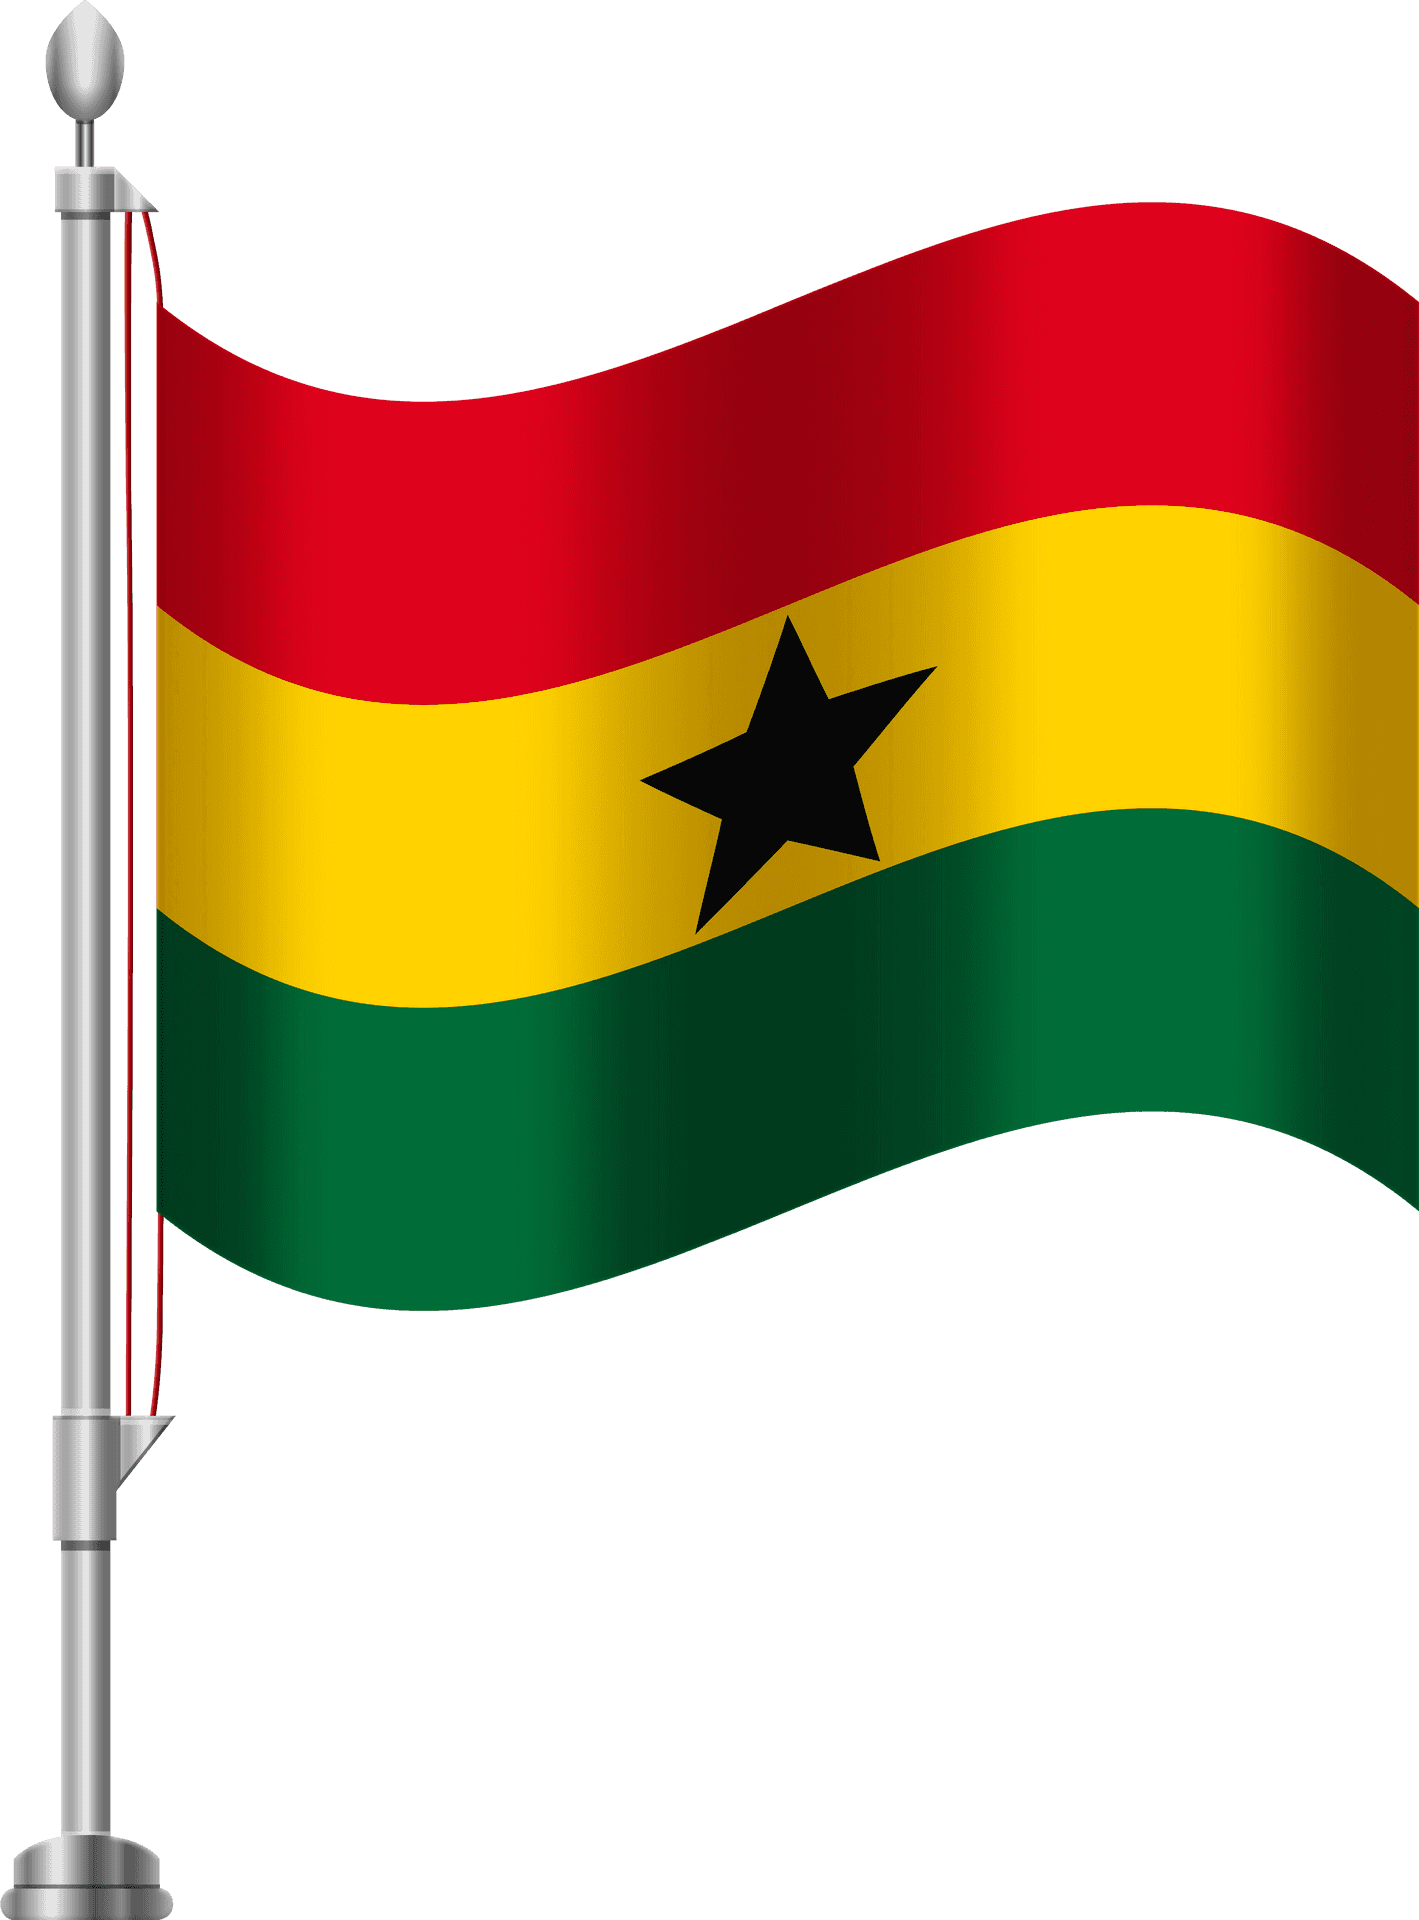 Ghana National Flag Waving PNG image